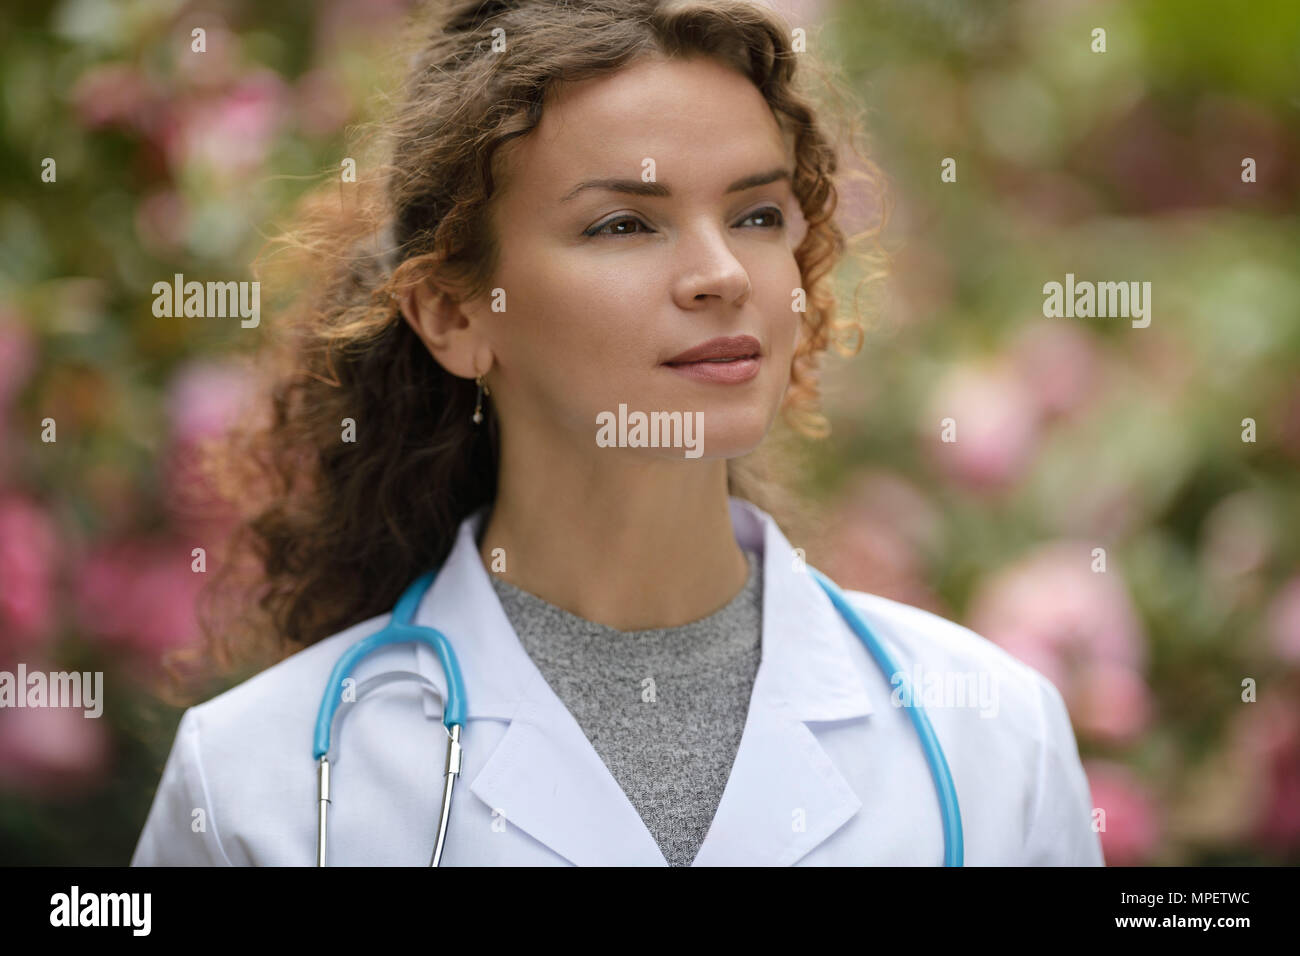 Ritratto di una giovane donna medico medico con un aspirante pensieroso look, carriera nella medicina naturale, healthcare come un medico. La wo Foto Stock